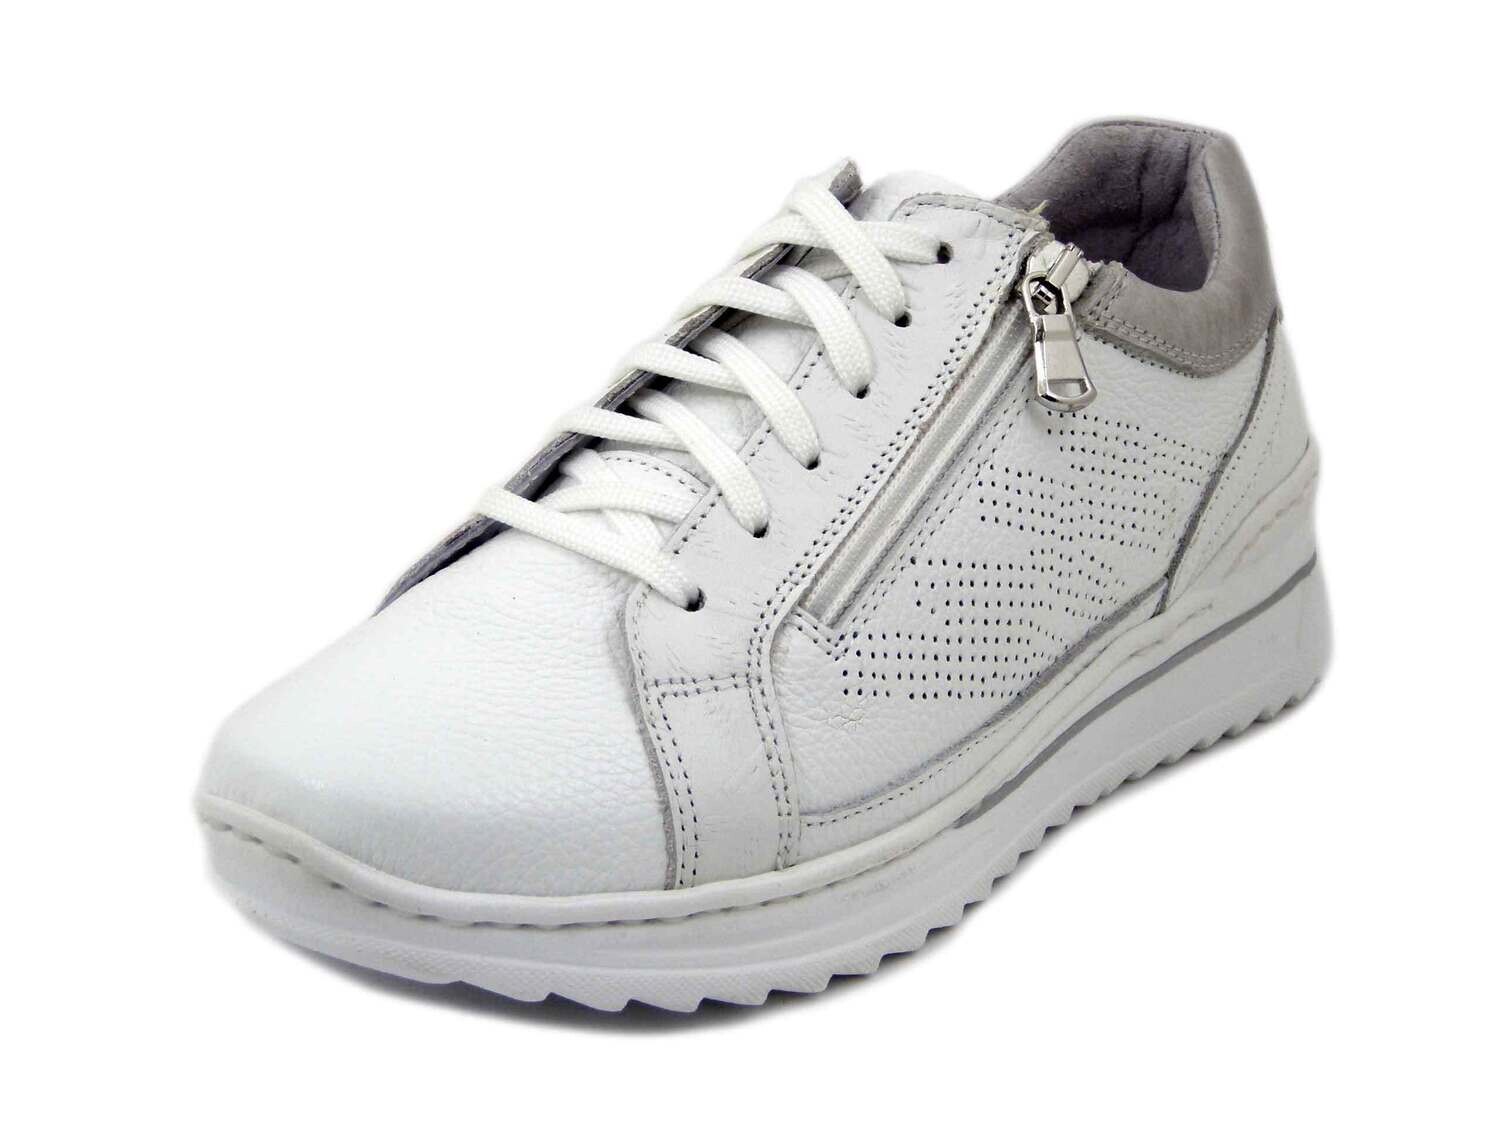 Stiledivita, Sneakers Donna in Pelle Bianco con Cerniera, Zeppa Bassa 4 cm,  Plantare Estraibile, Pianta Comoda, 7520